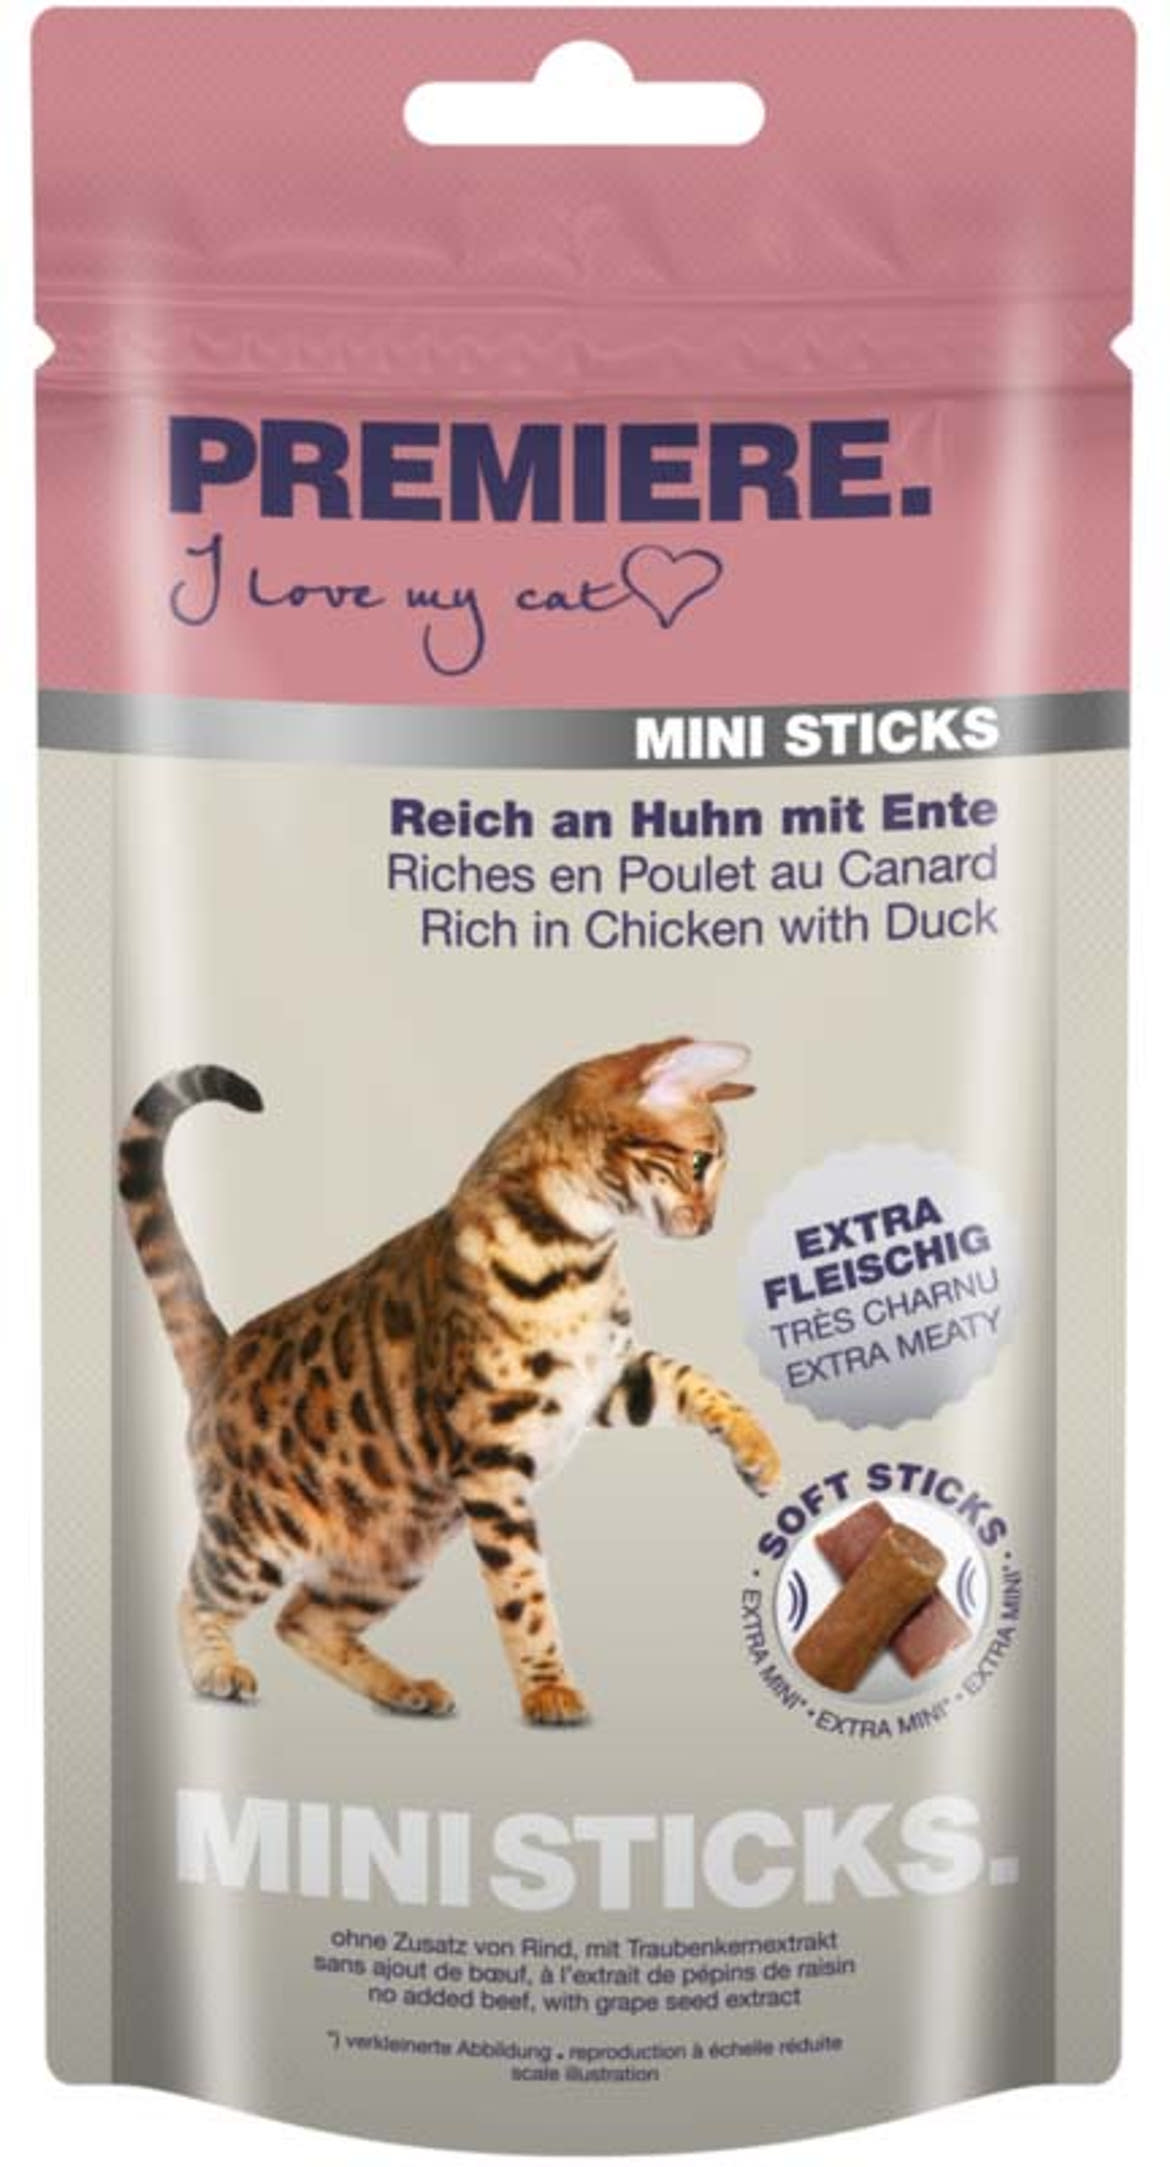 Premiere Mini Sticks macska jutalomfalat csirke&kacsa